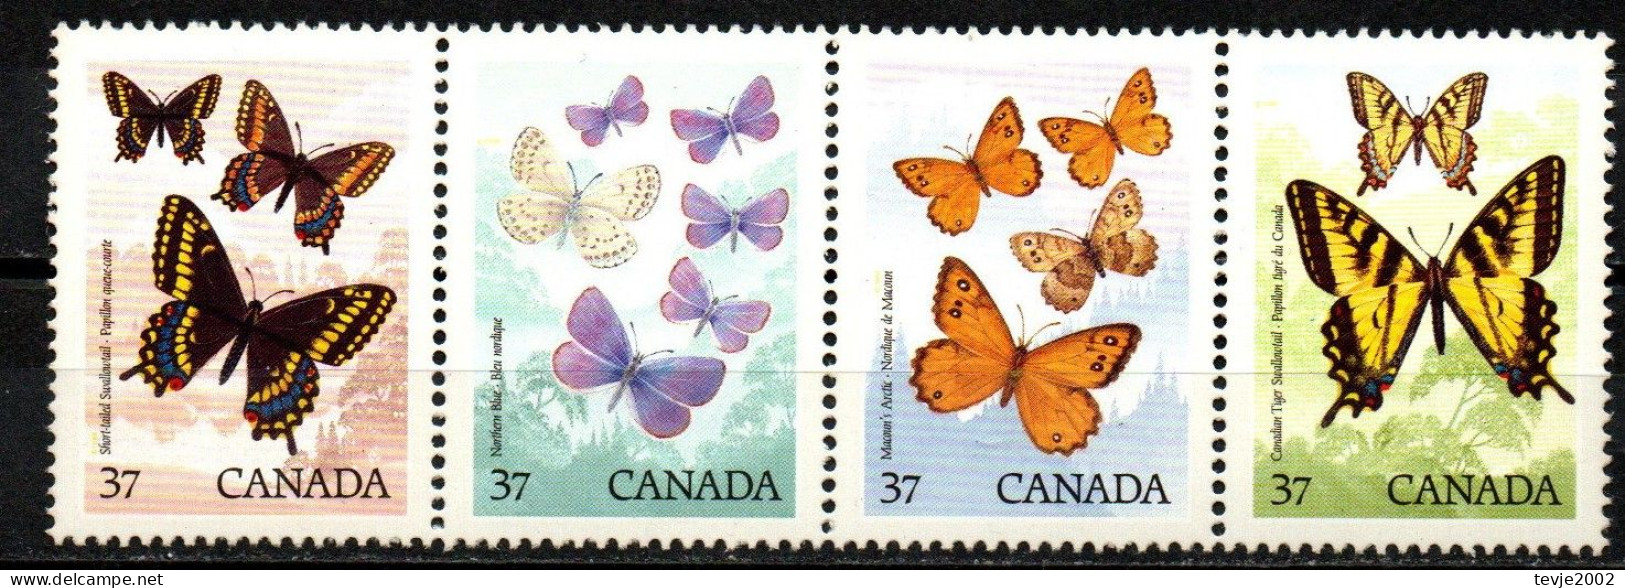 Kanada Canada 1988 - Mi.Nr. 1090 - 1093 - Postfrisch MNH - Tiere Animals Schmetterlinge Butterflies - Schmetterlinge